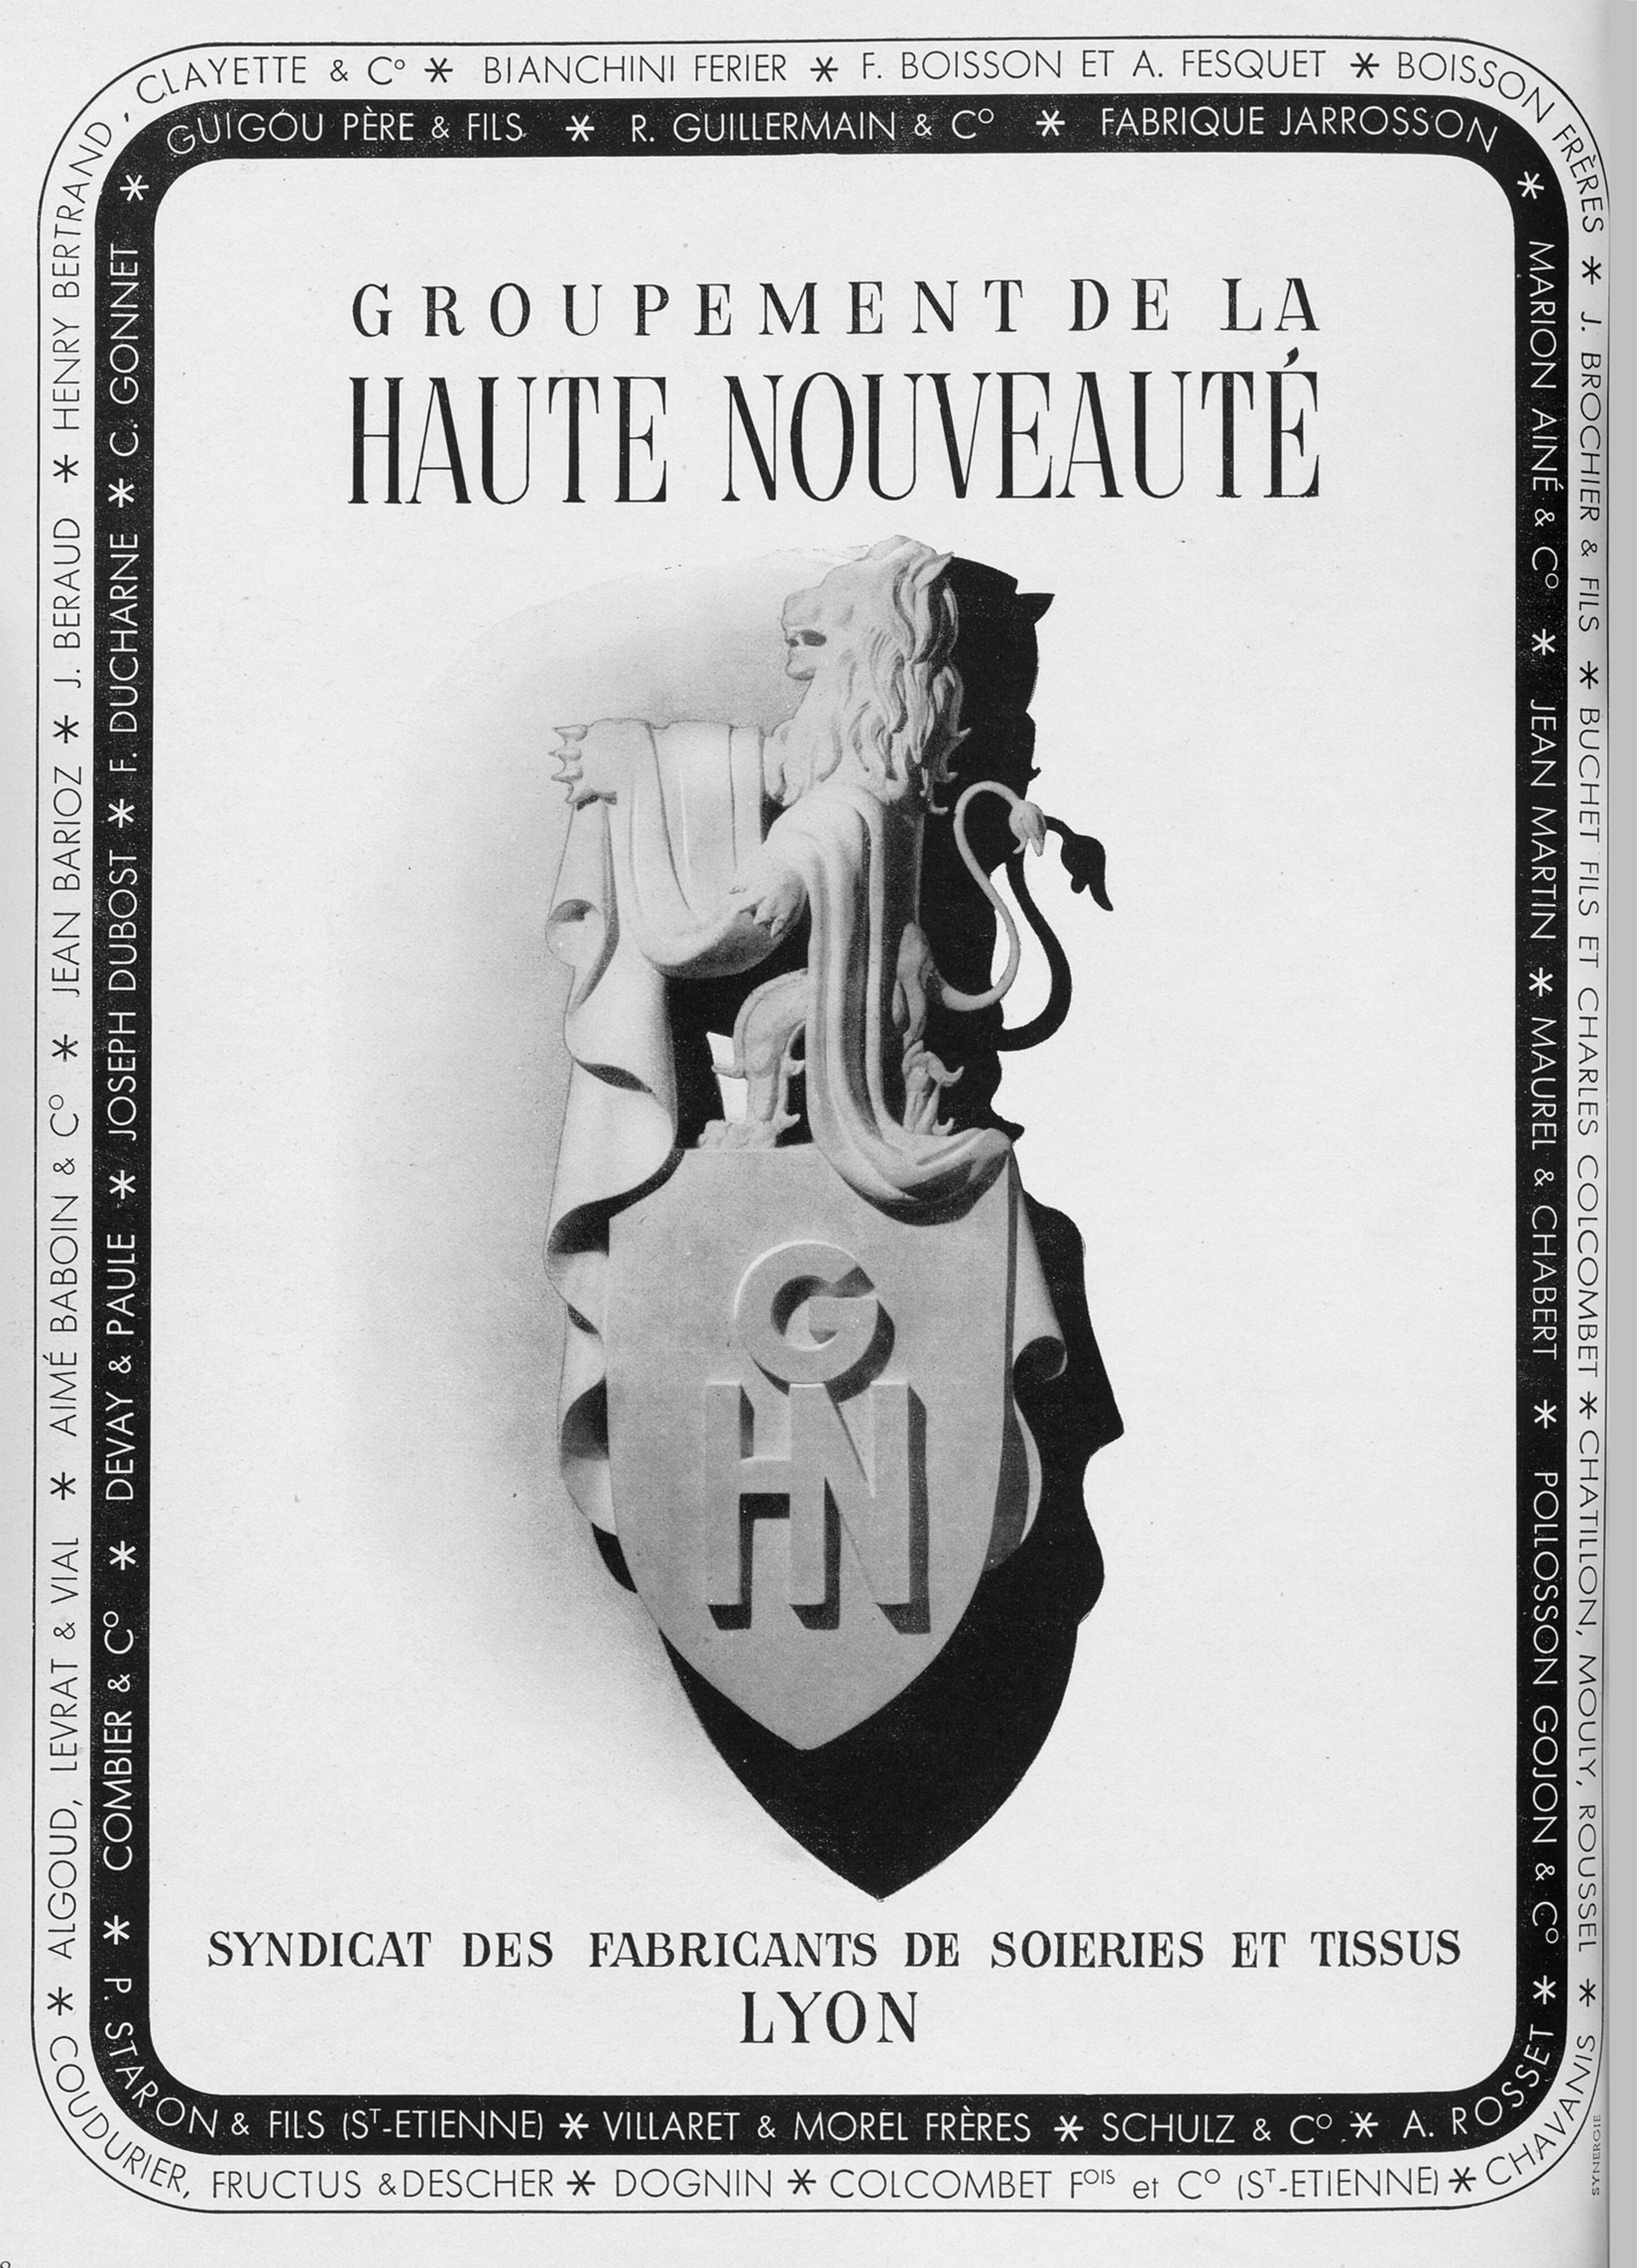 Publicité pour le groupement de la Haute Nouveauté - Syndicat des fabricants de soieries et tissus de Lyon, 1945-1946. © © musée des Tissus – Sylvain Pretto